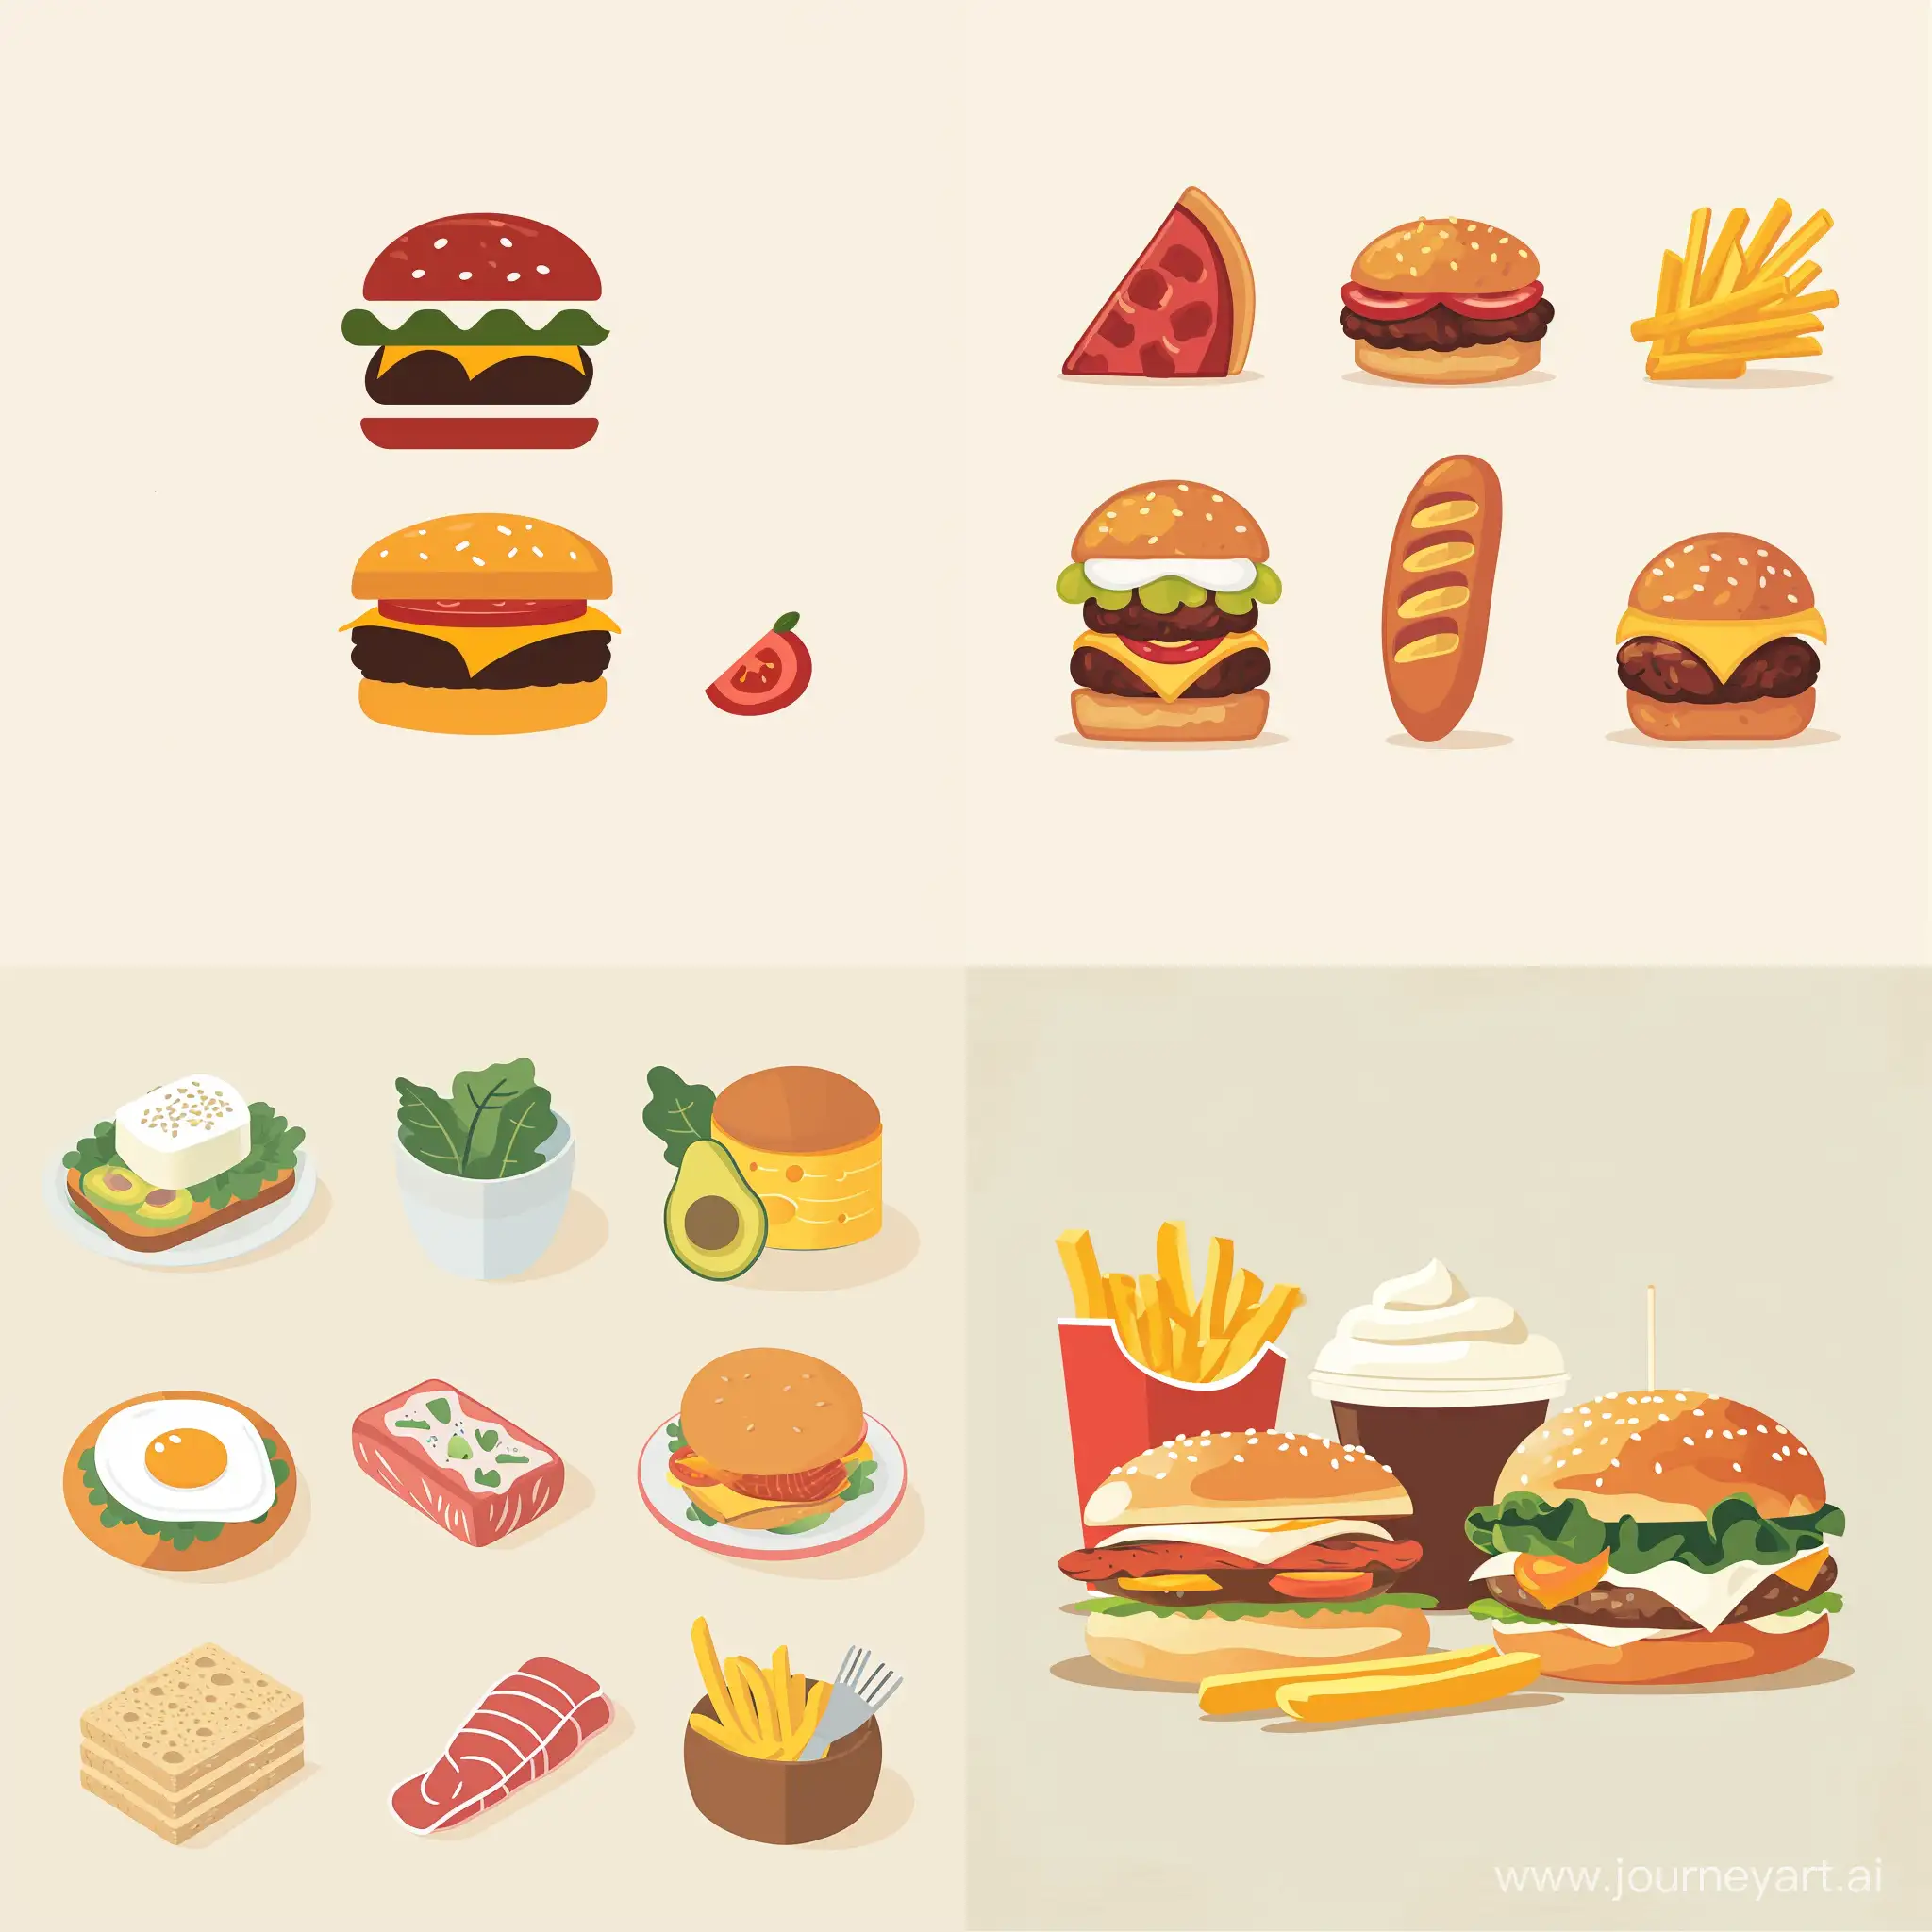 Minimalistic-Vector-Style-Food-Illustration